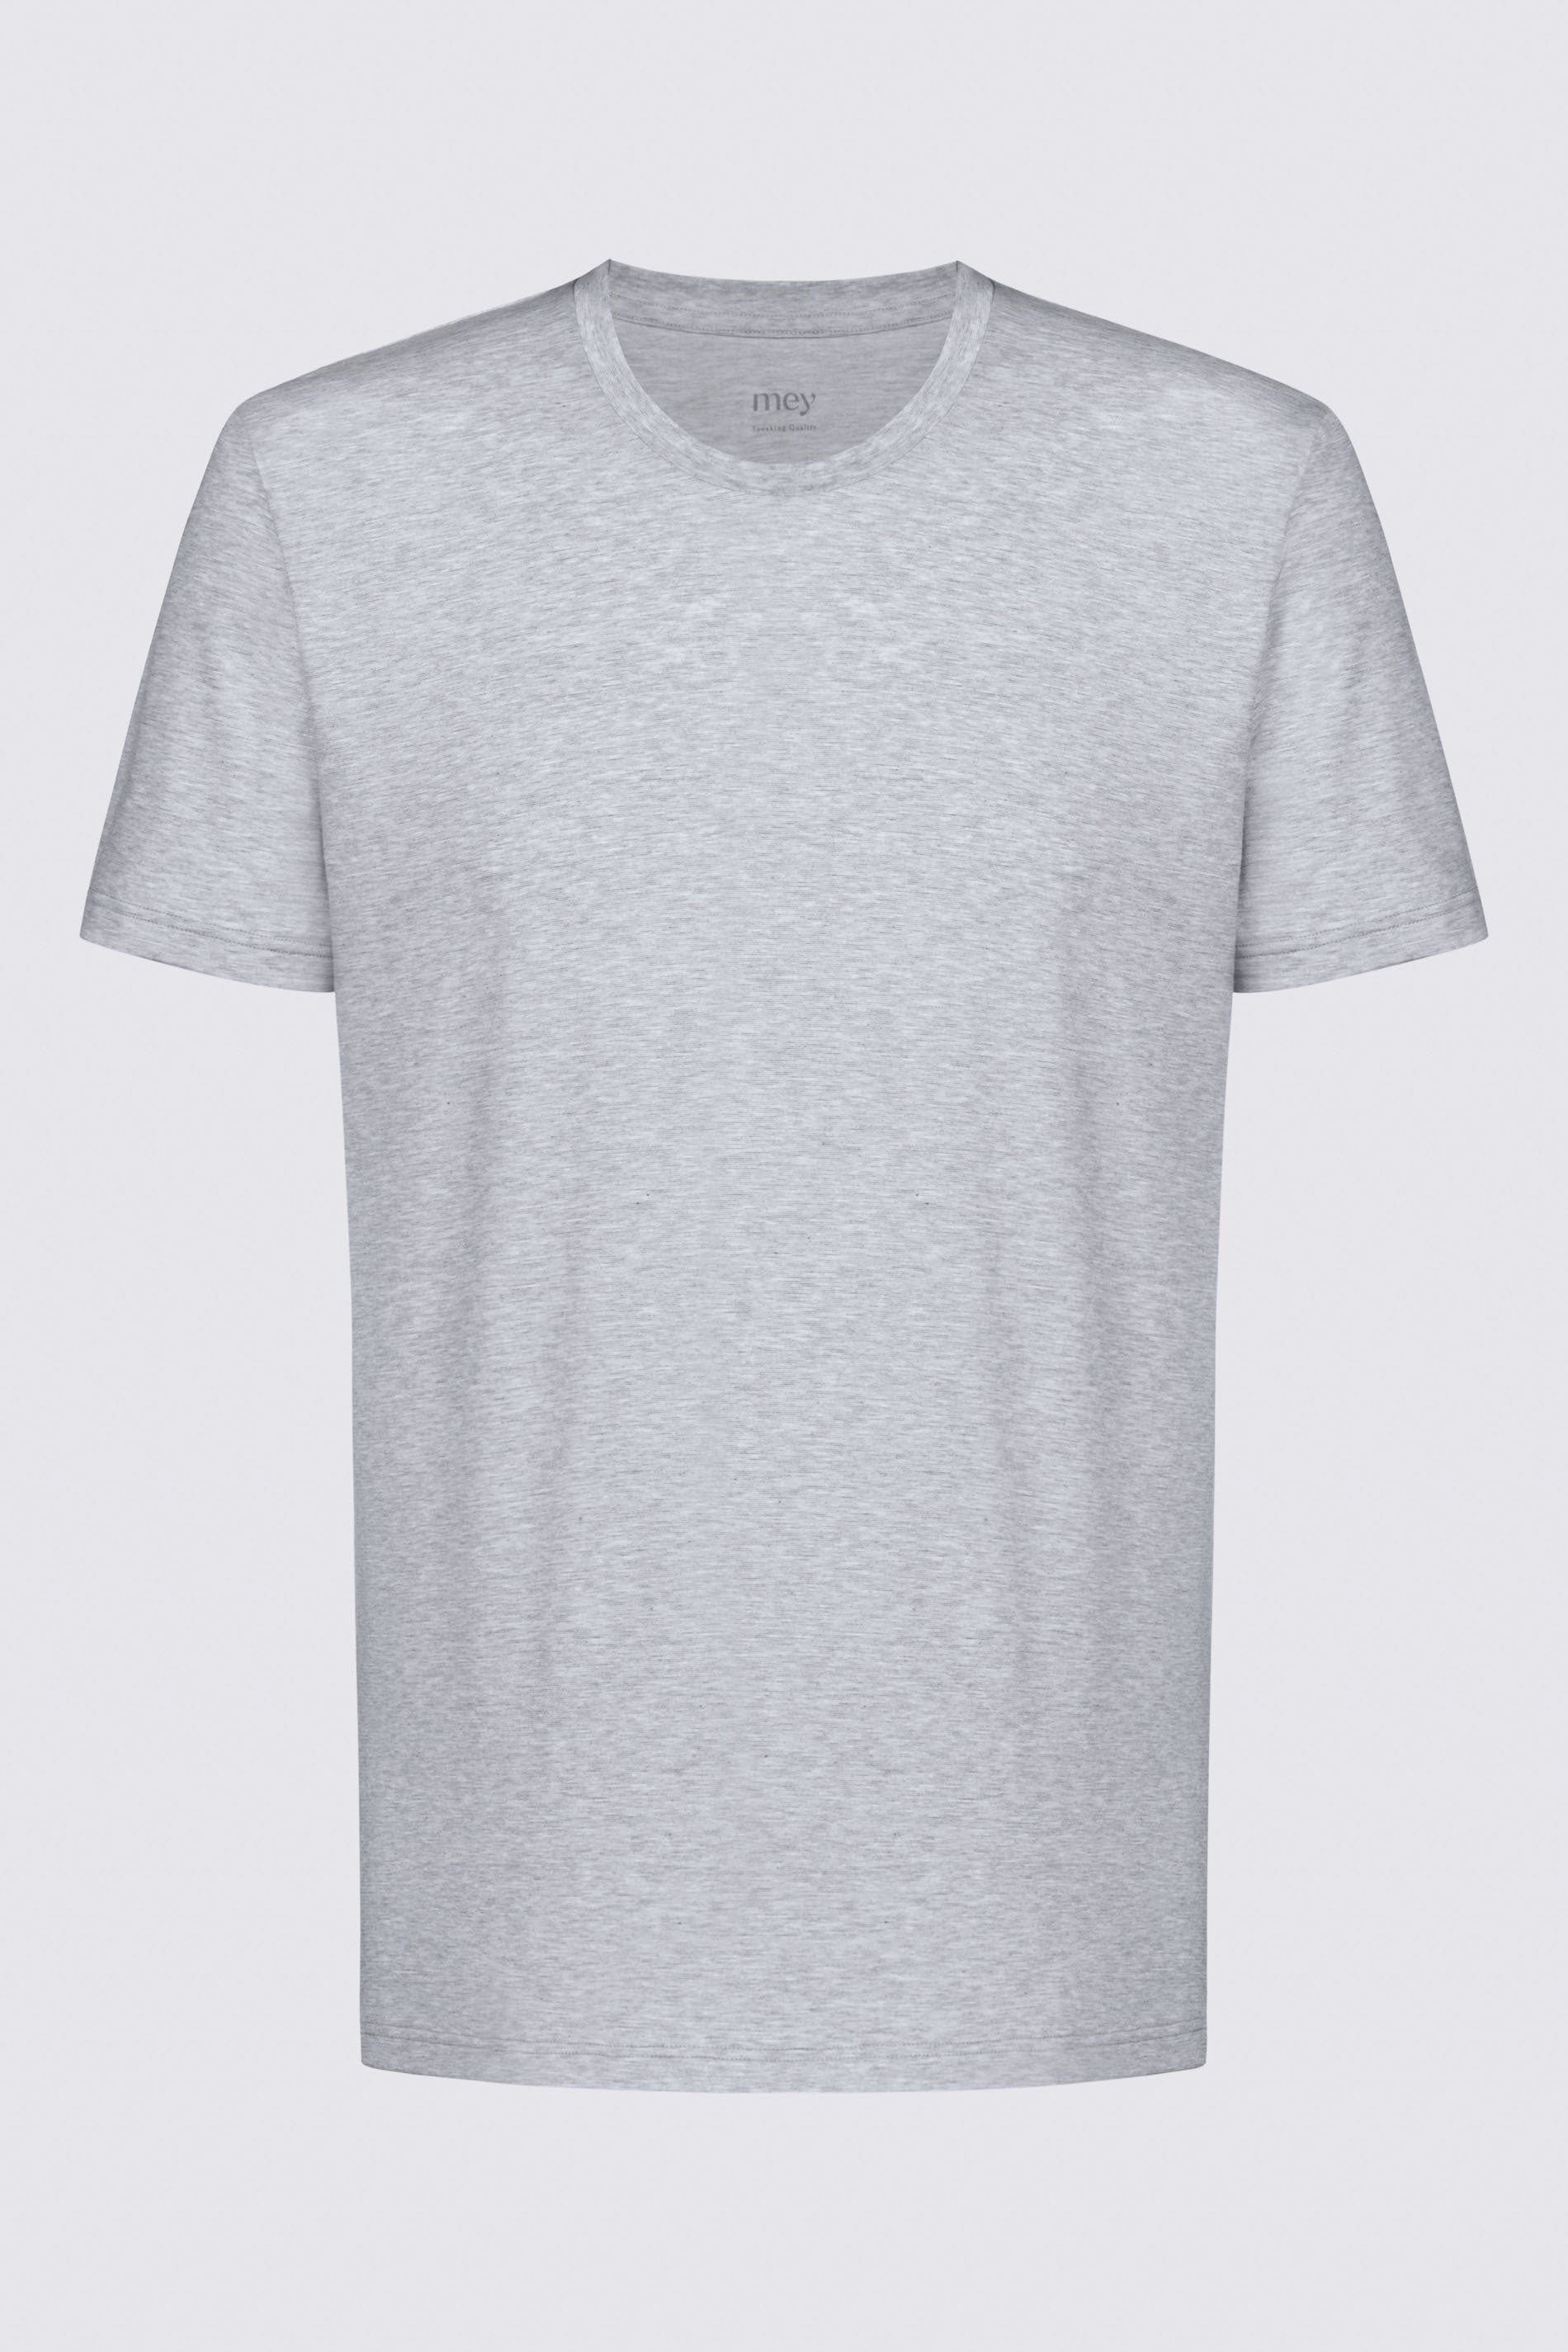 Serie Grey Dry Light Cotton (1-tlg) Uni Melange T-Shirt Colour Mey